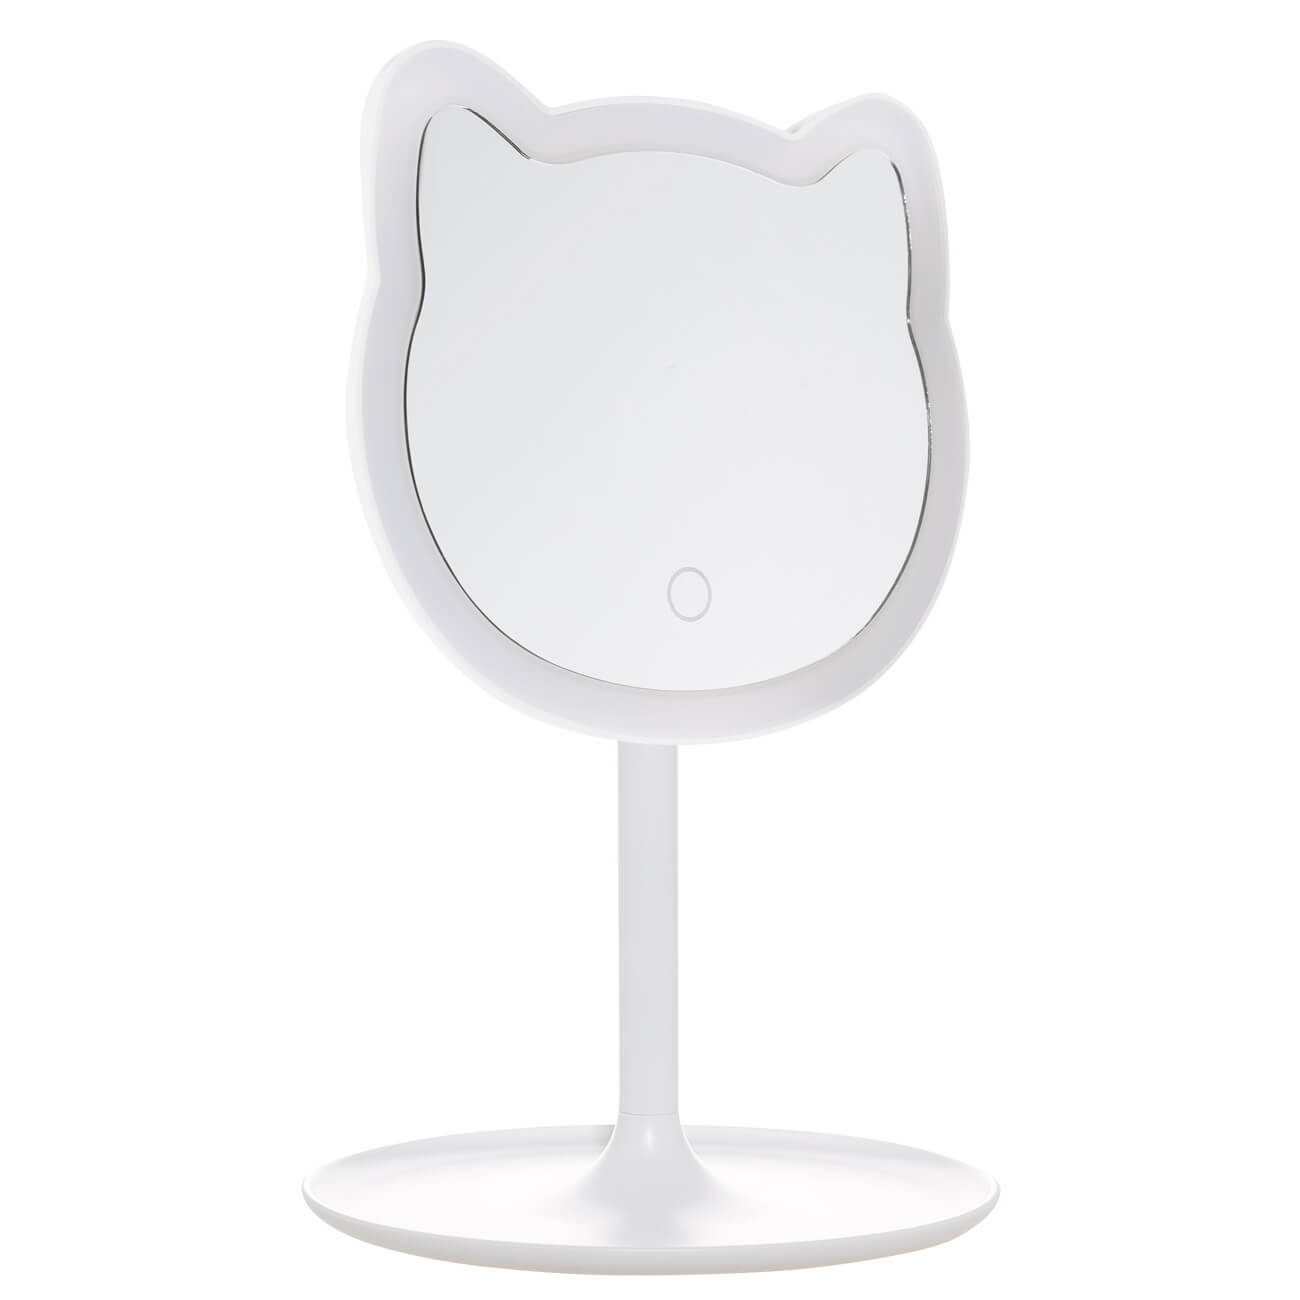 Зеркало настольное, 29 см, с подсветкой, на подставке, пластик, белое, Кот, Cat зеркало настольное 33 см с подсветкой на подставке пластик круглое белое vesta